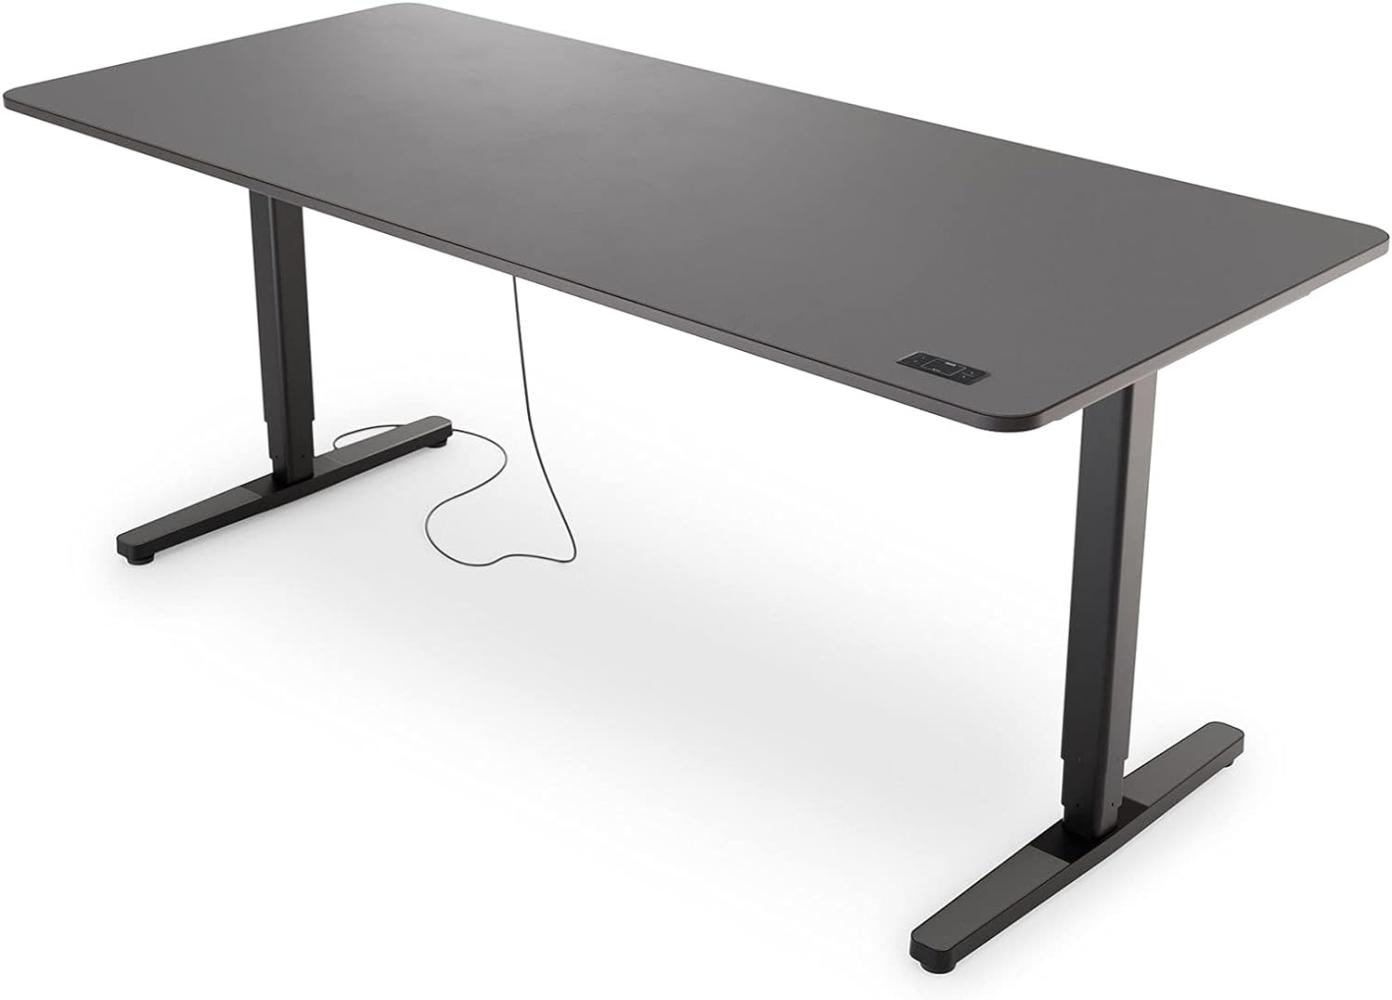 Yaasa Desk Pro II Elektrisch Höhenverstellbarer Schreibtisch, 180 x 80 cm, Dunkelgrau/Schwarz, mit Speicherfunktion und Kollisionssensor Bild 1